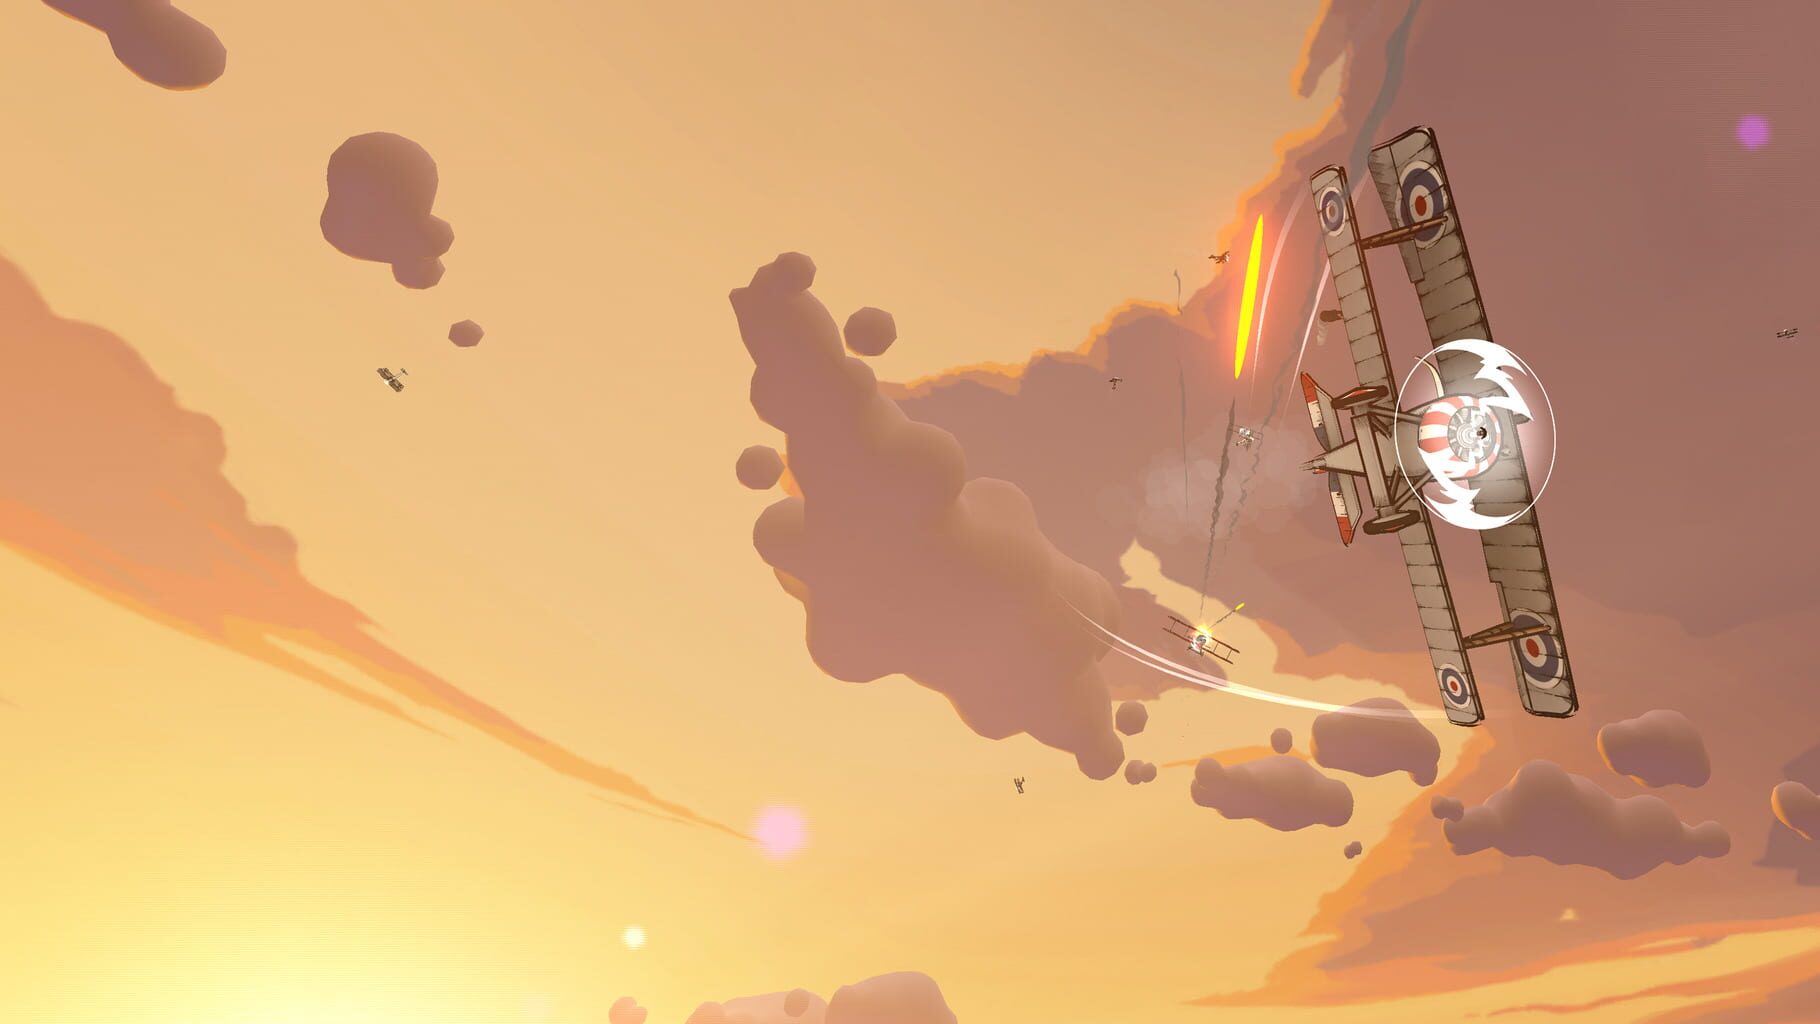 Skies of Fury DX screenshots